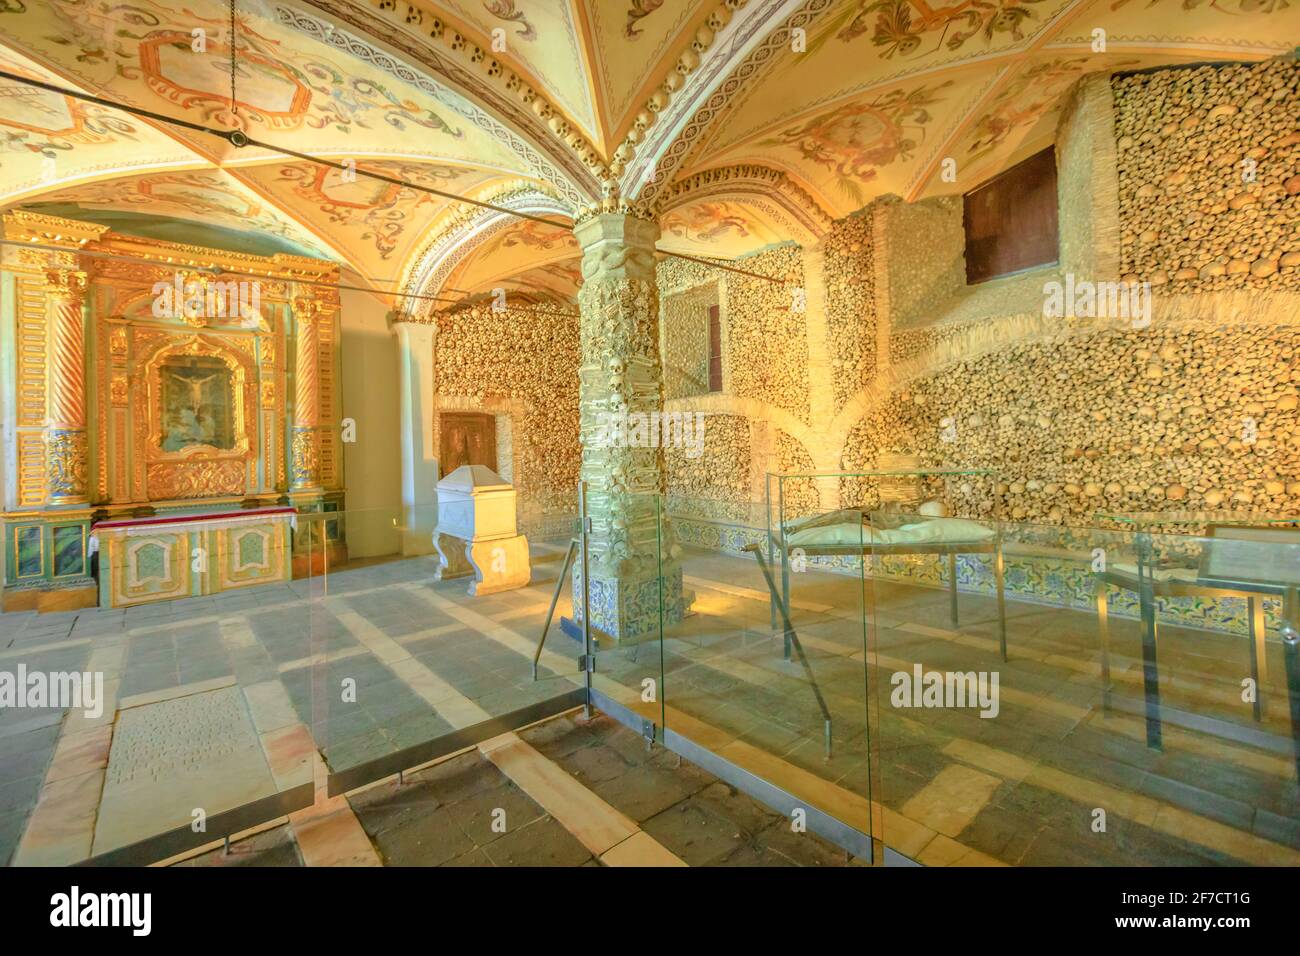 Evora, Portugal - 18 août 2017 : intérieur de la chapelle Bones, située dans l'église de Sao Francisco de Assis, l'un des monuments les plus visités de Banque D'Images